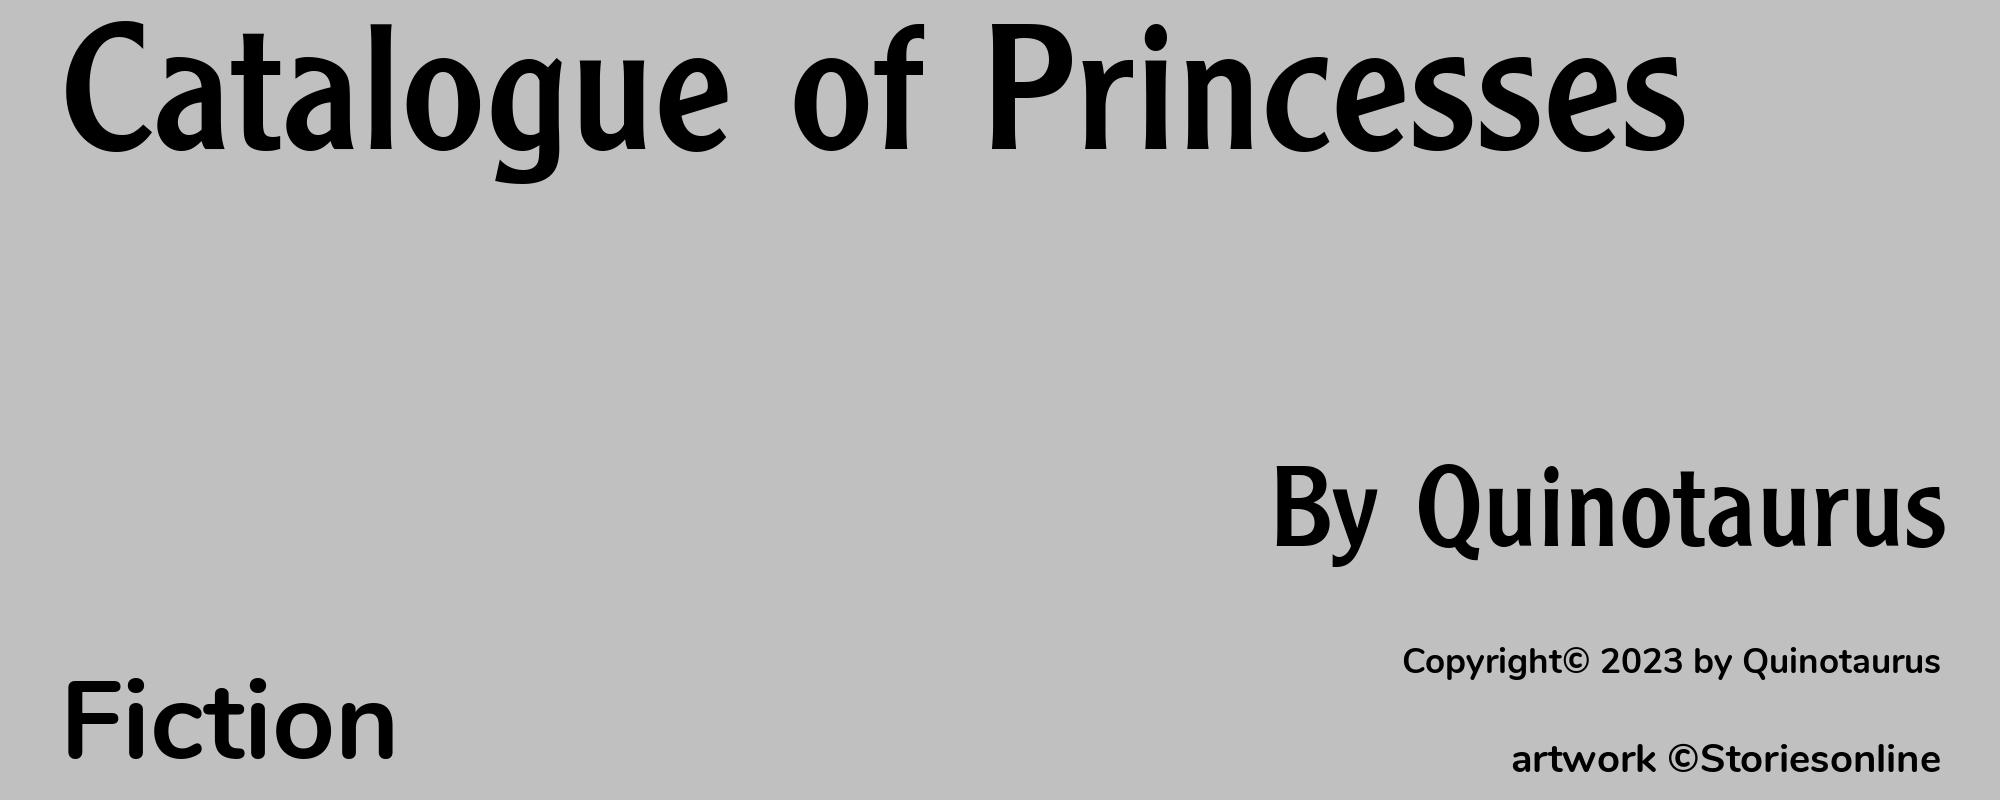 Catalogue of Princesses - Cover